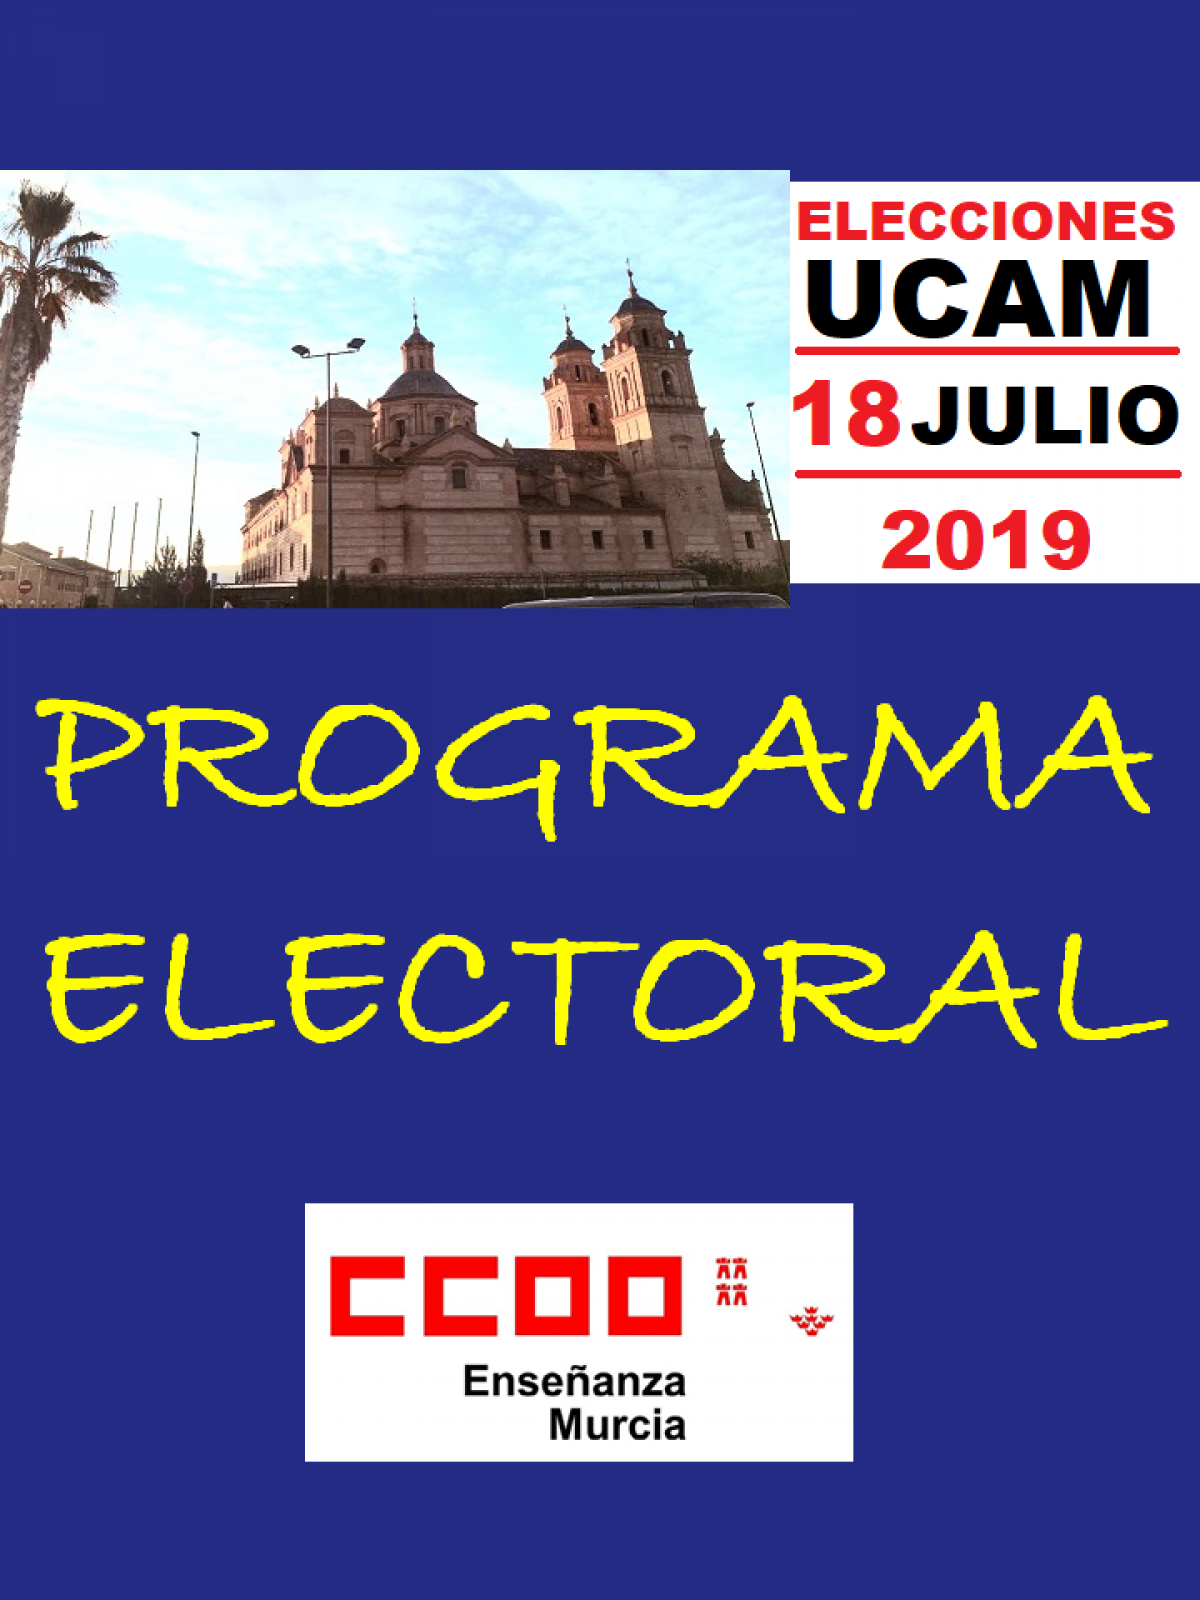 Comienza la campaña de las elecciones sindicales de la UCAM.